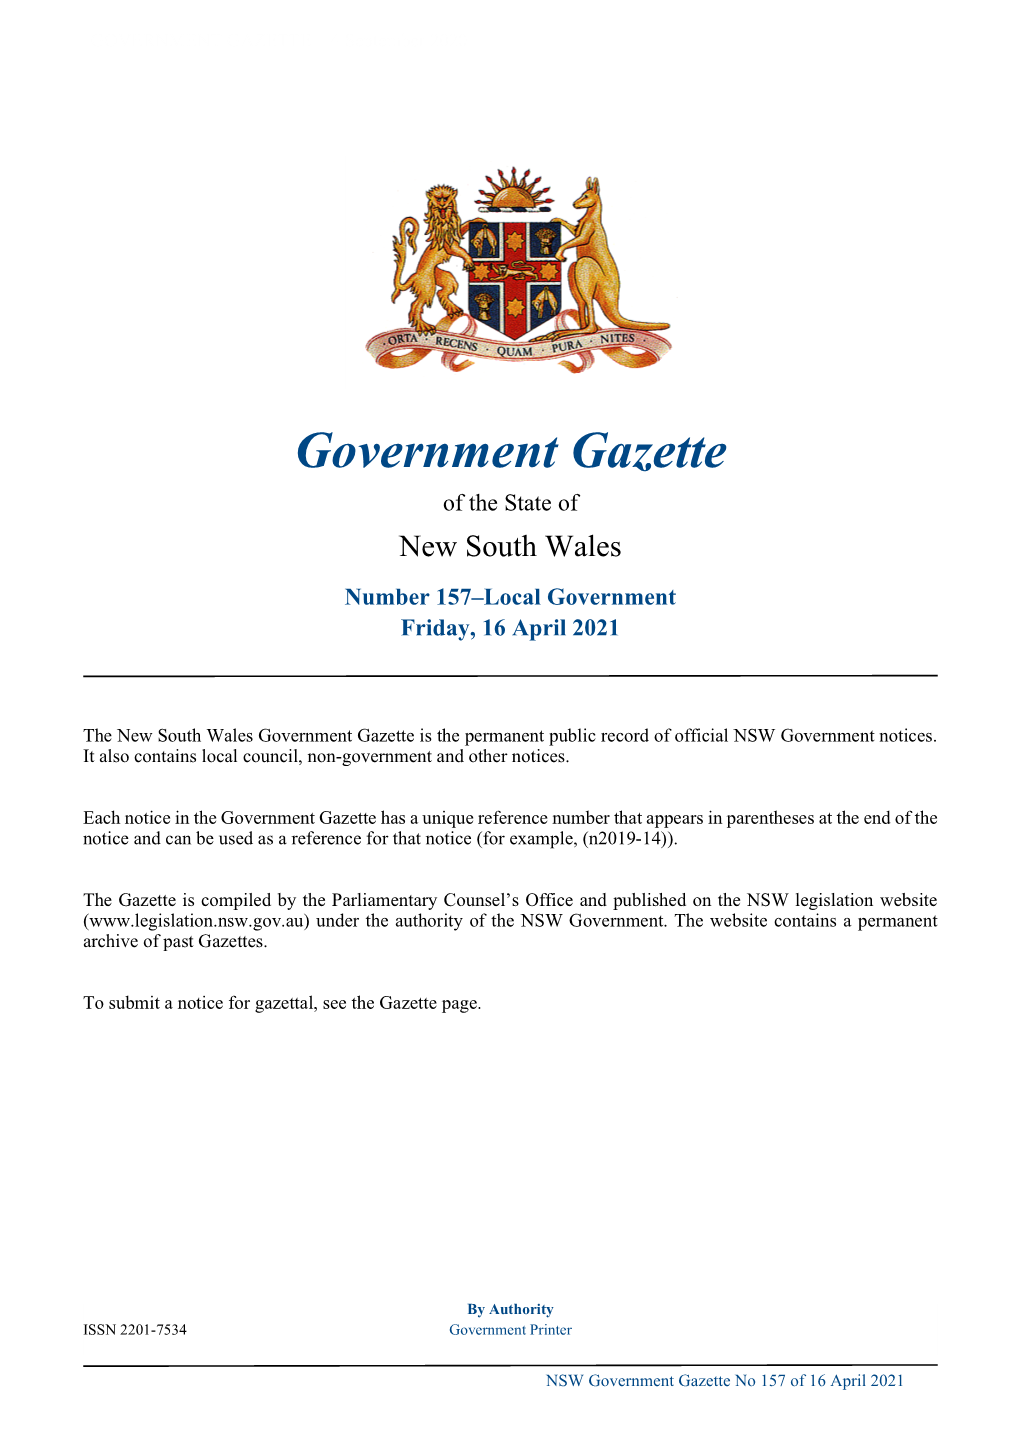 Government Gazette No 157 of Friday 16 April 2021